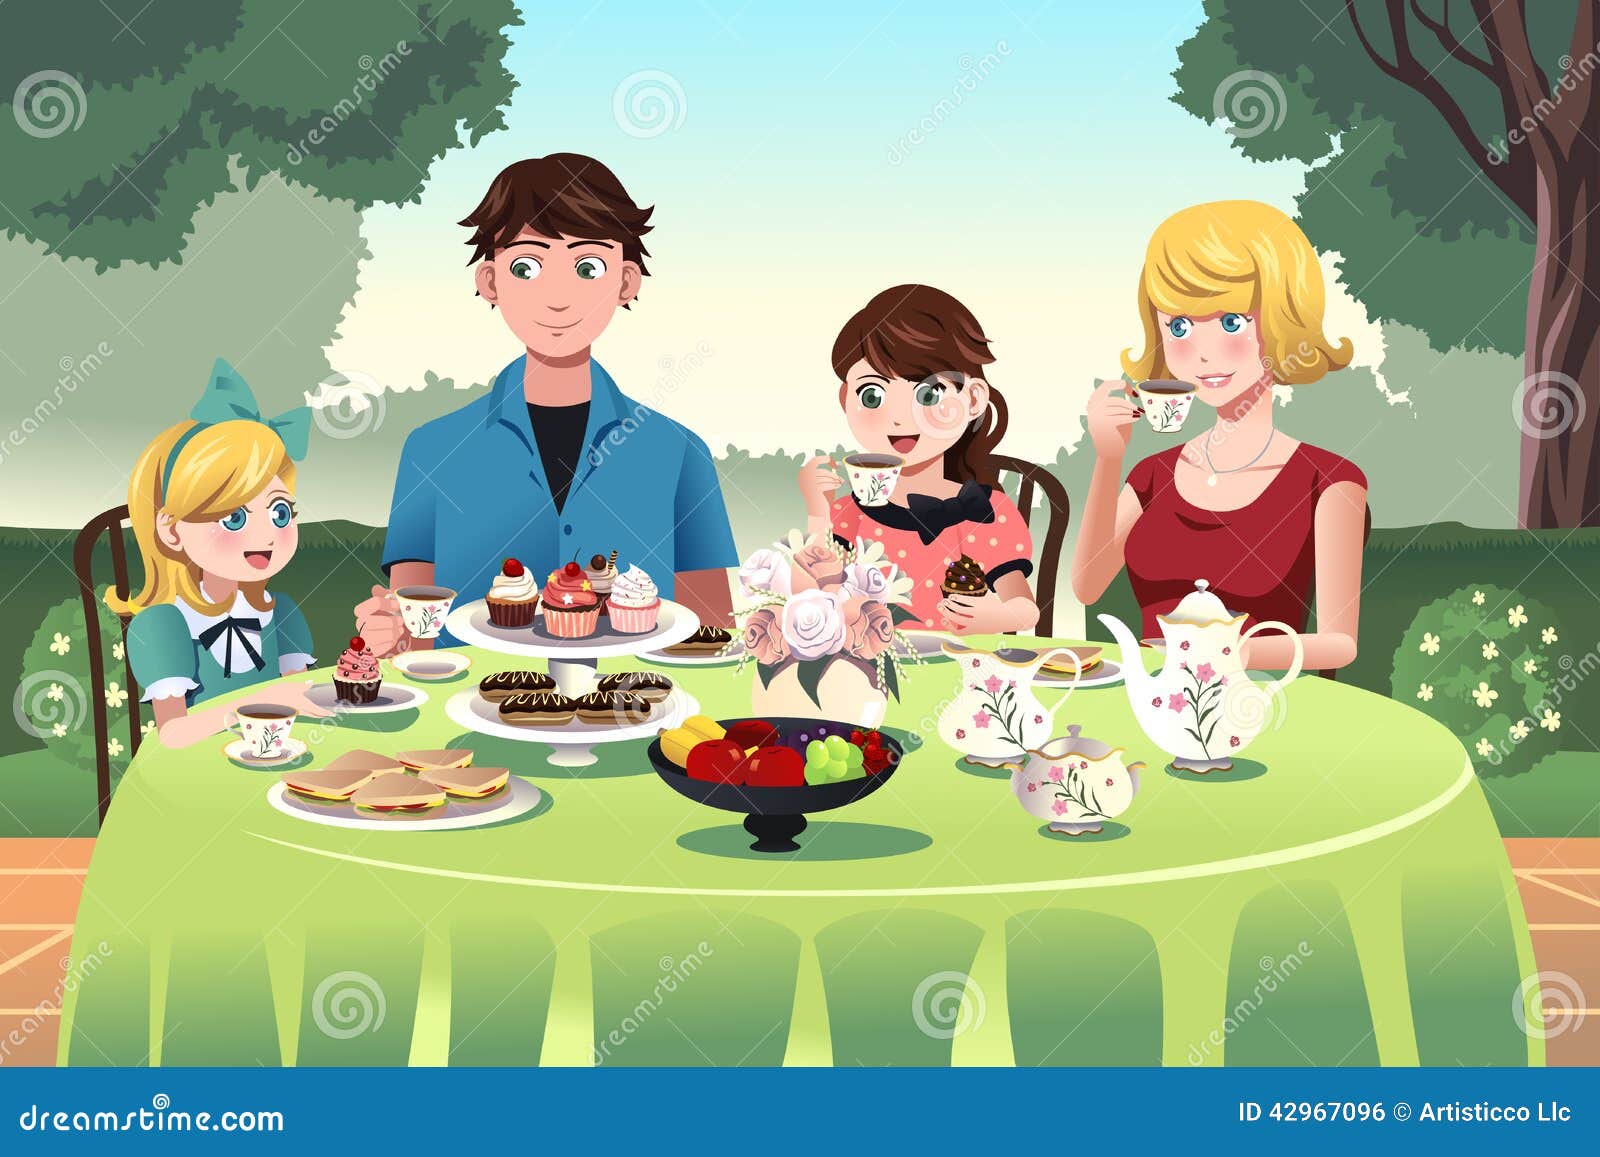 Круглый стол год семьи. Семейное чаепитие. Семья за столом. Картина семья за столом. Семья за столом картинки.